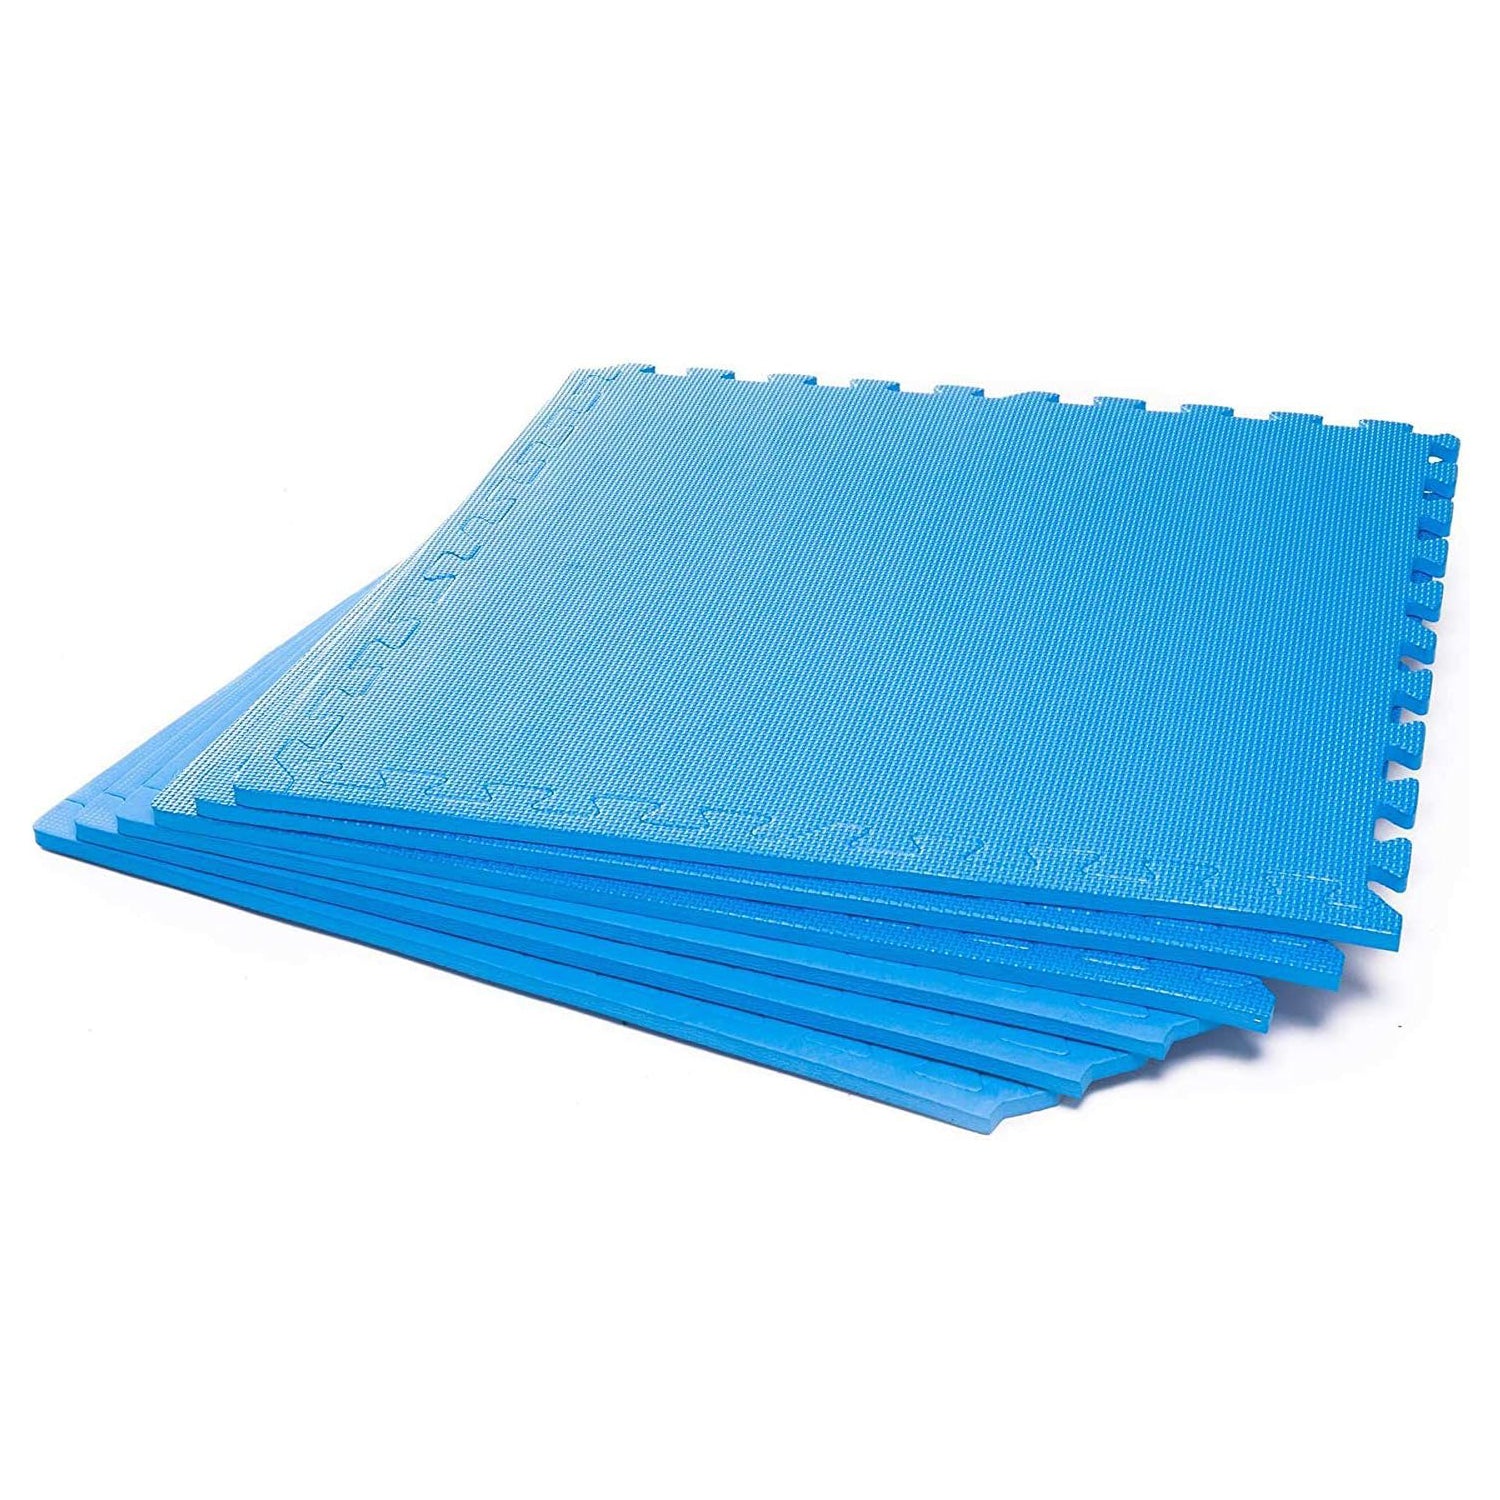 Puzzlematte & Unterlegmatte -  60 x 60 x 1,2 cm Puzzleteppich - Wasserabweisend & Rutschfest - Blau